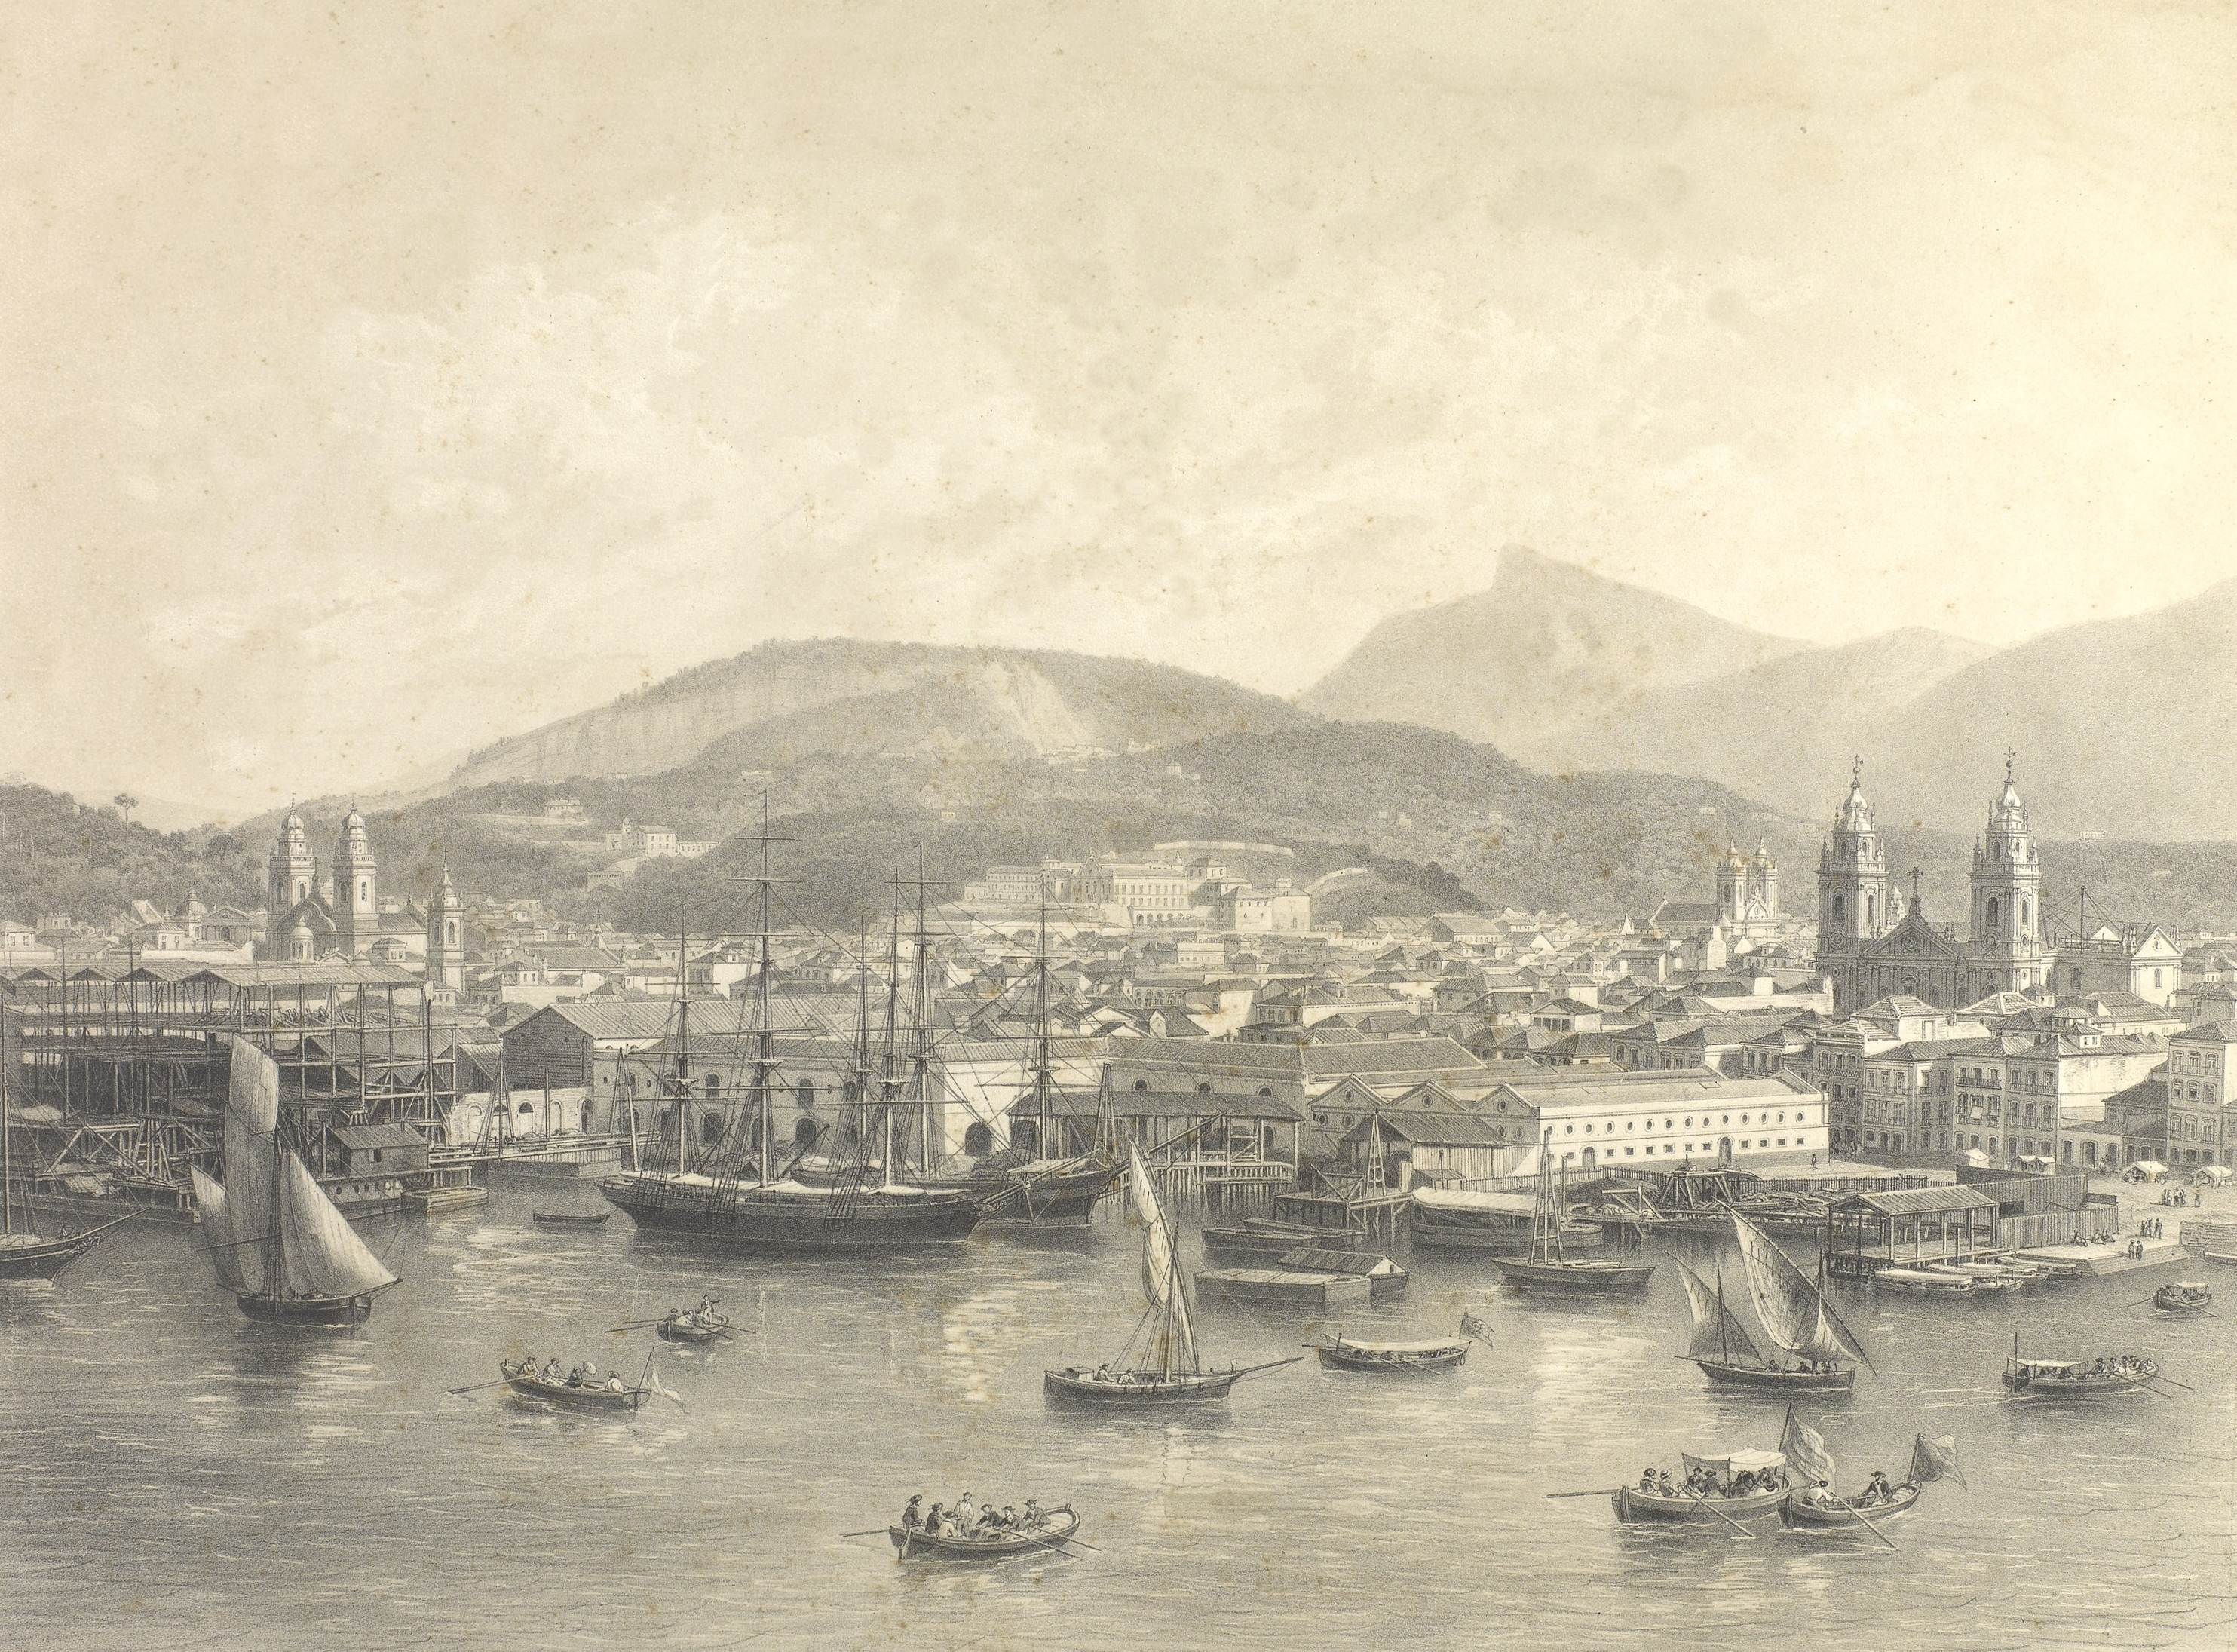 Vista do Rio de Janeiro, litografia a partir de fotografia de Victor Frond, extraída do livro Brasil pitoresco (1856)